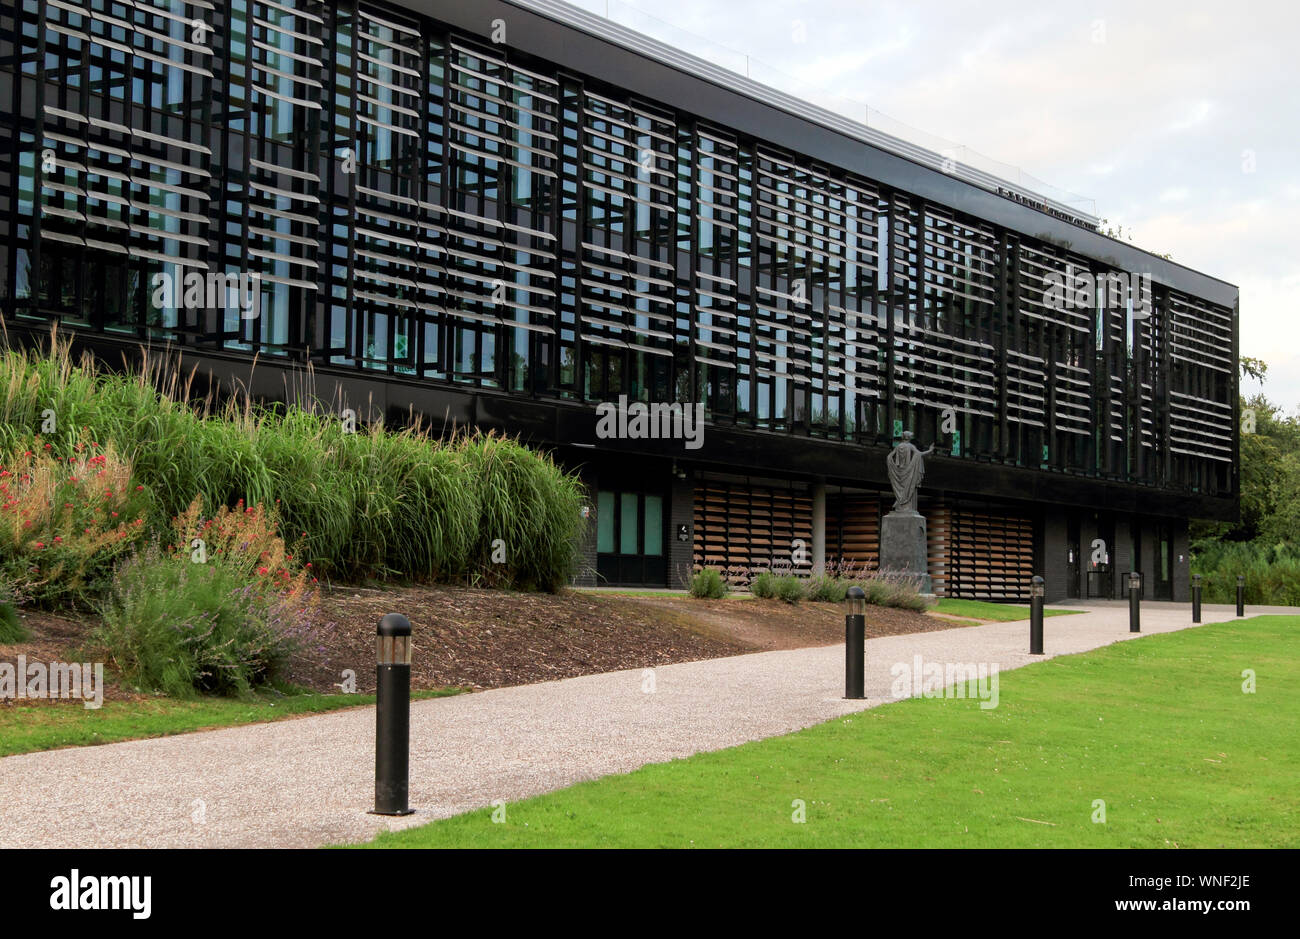 UWS, University of the West of Scotland, Ayr, Ayrshire, Scotland, UK Stock Photo